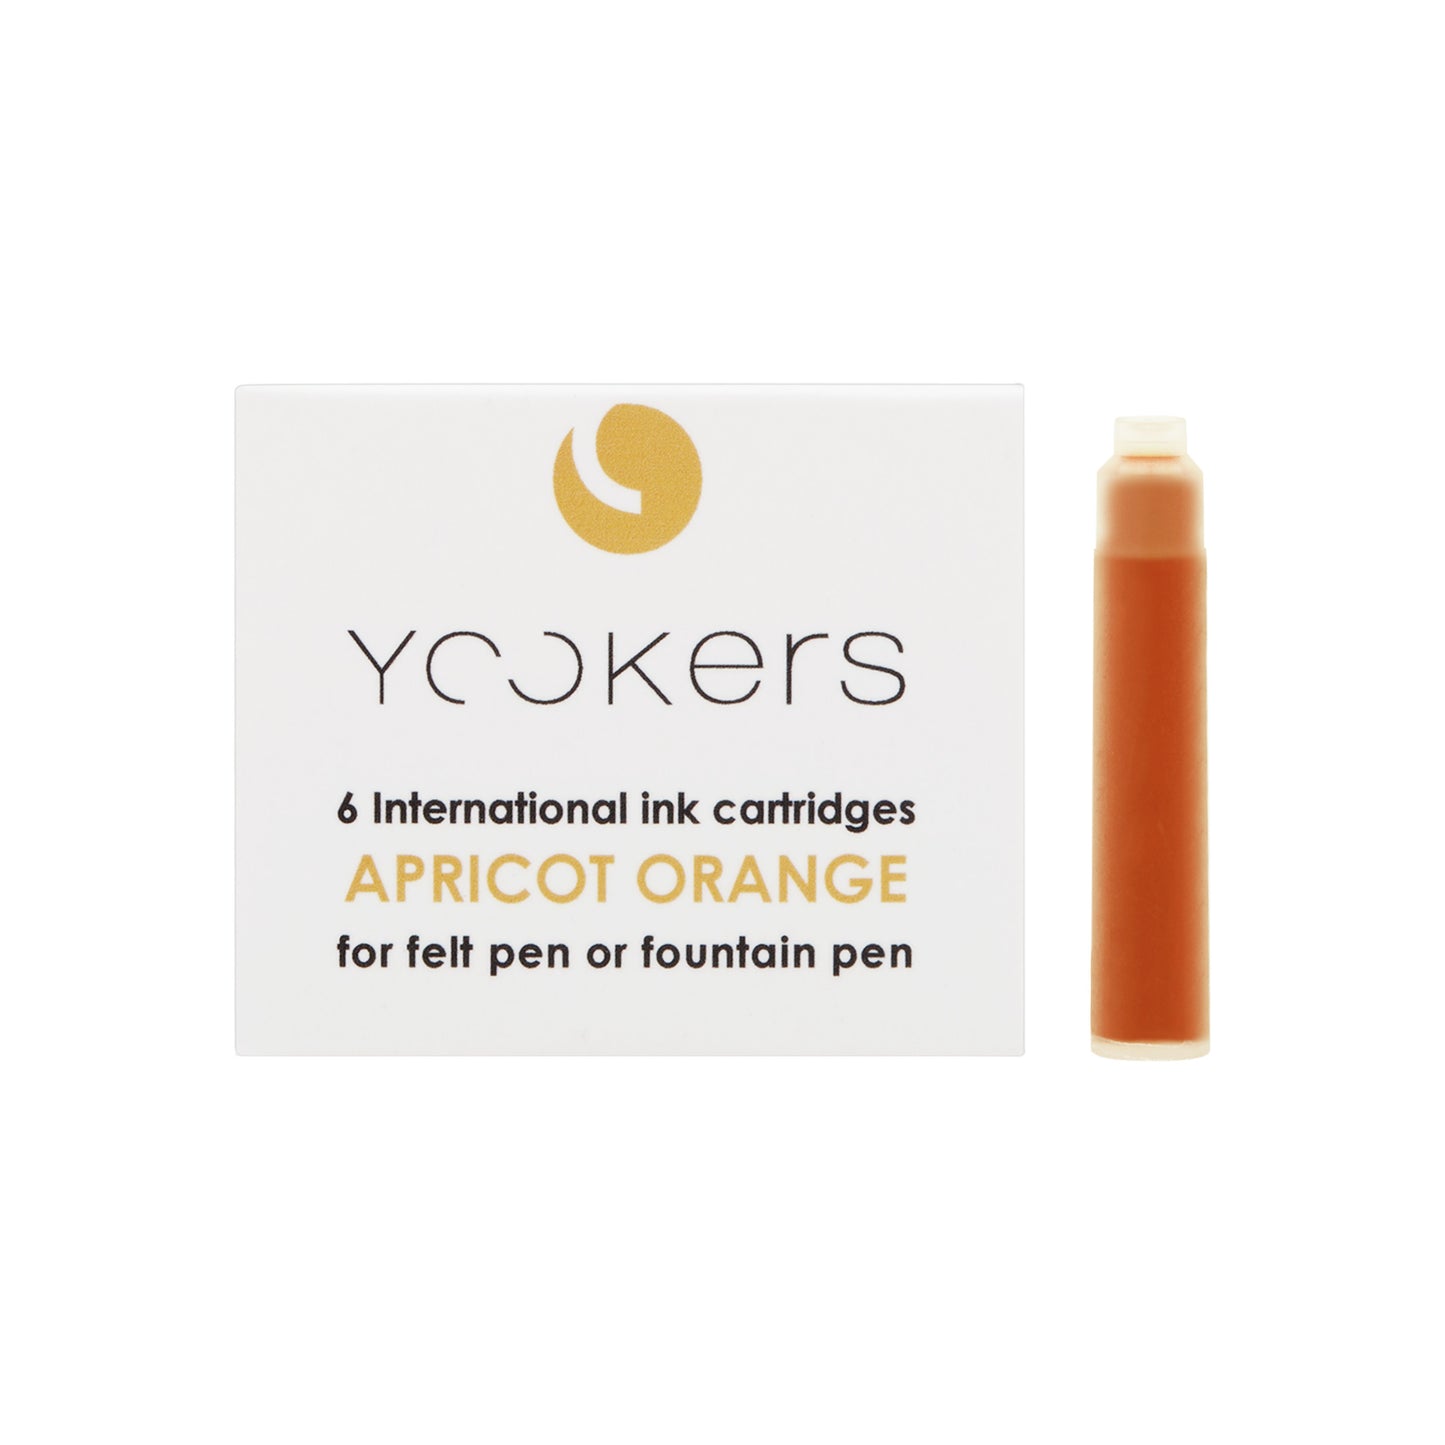 Yookers 6 international ink cartridges Apricot Orange.